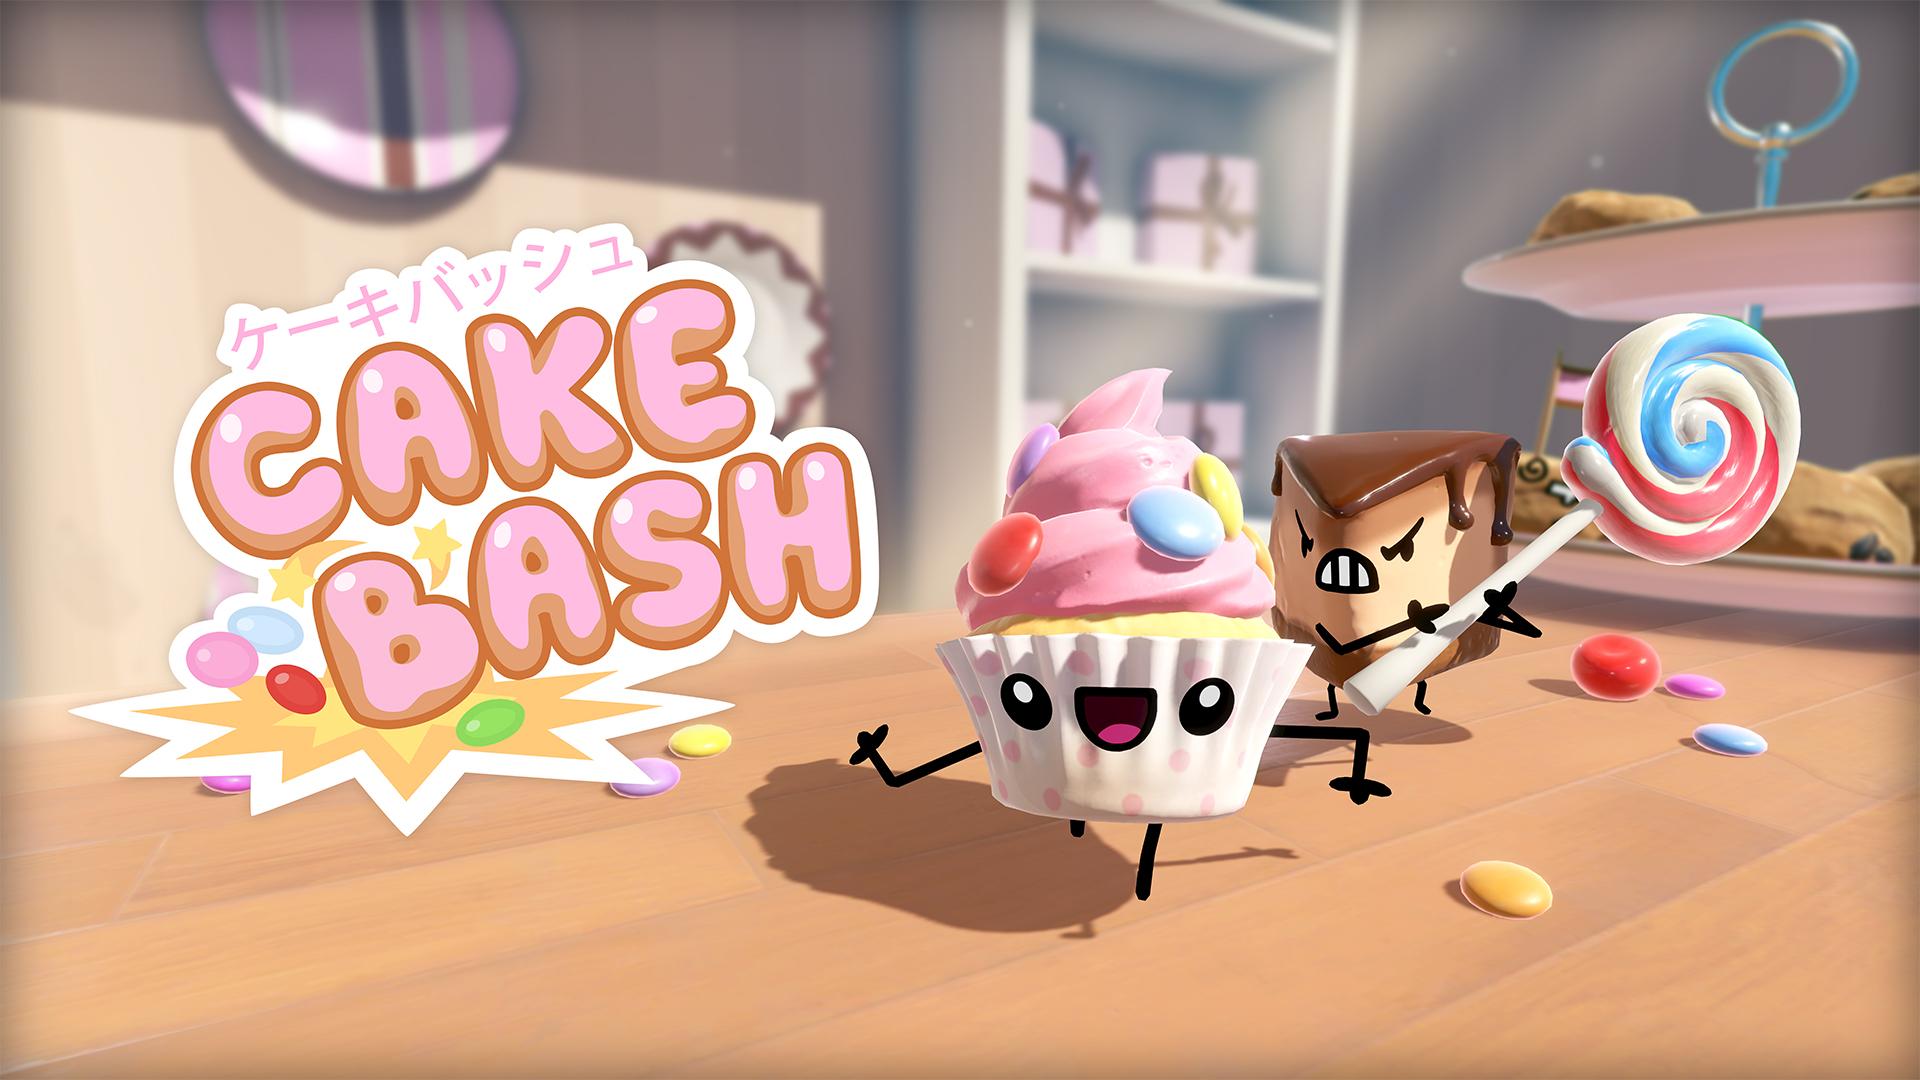 Cake Bash ケーキバッシュ のps4 Switch版が本日リリース No 1スイーツを決めるバトルロイヤル パーティーゲーム